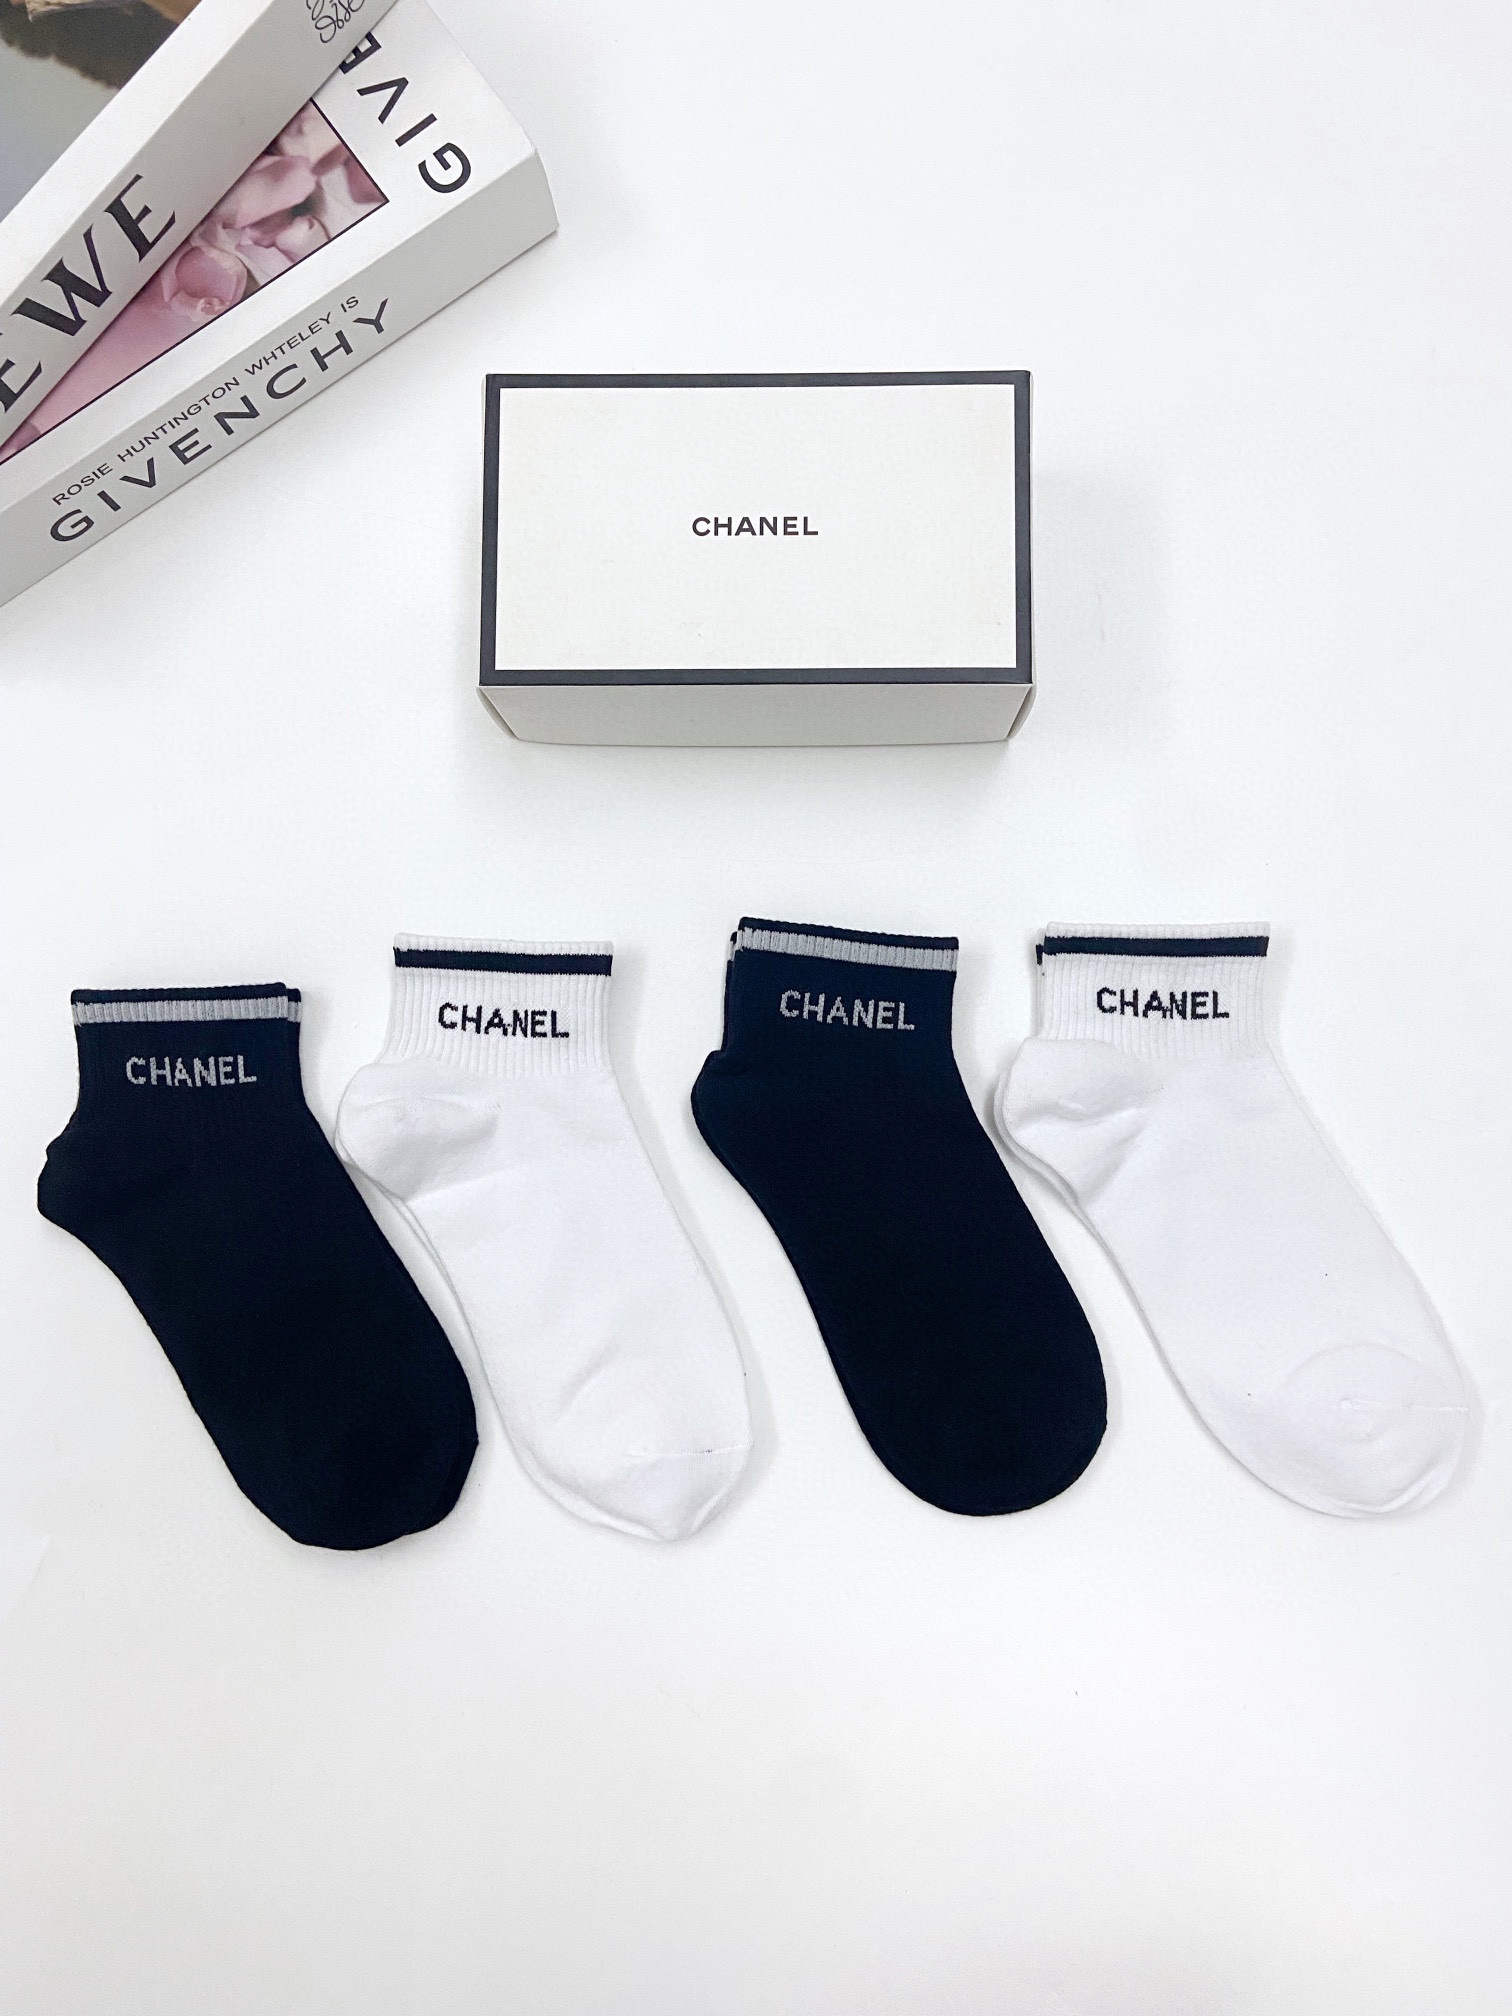 配包装一盒4双Chanel香奈儿经典字母logo纯棉短袜ins超火爆短袜纯棉面料潮人必备经典配色个性时尚